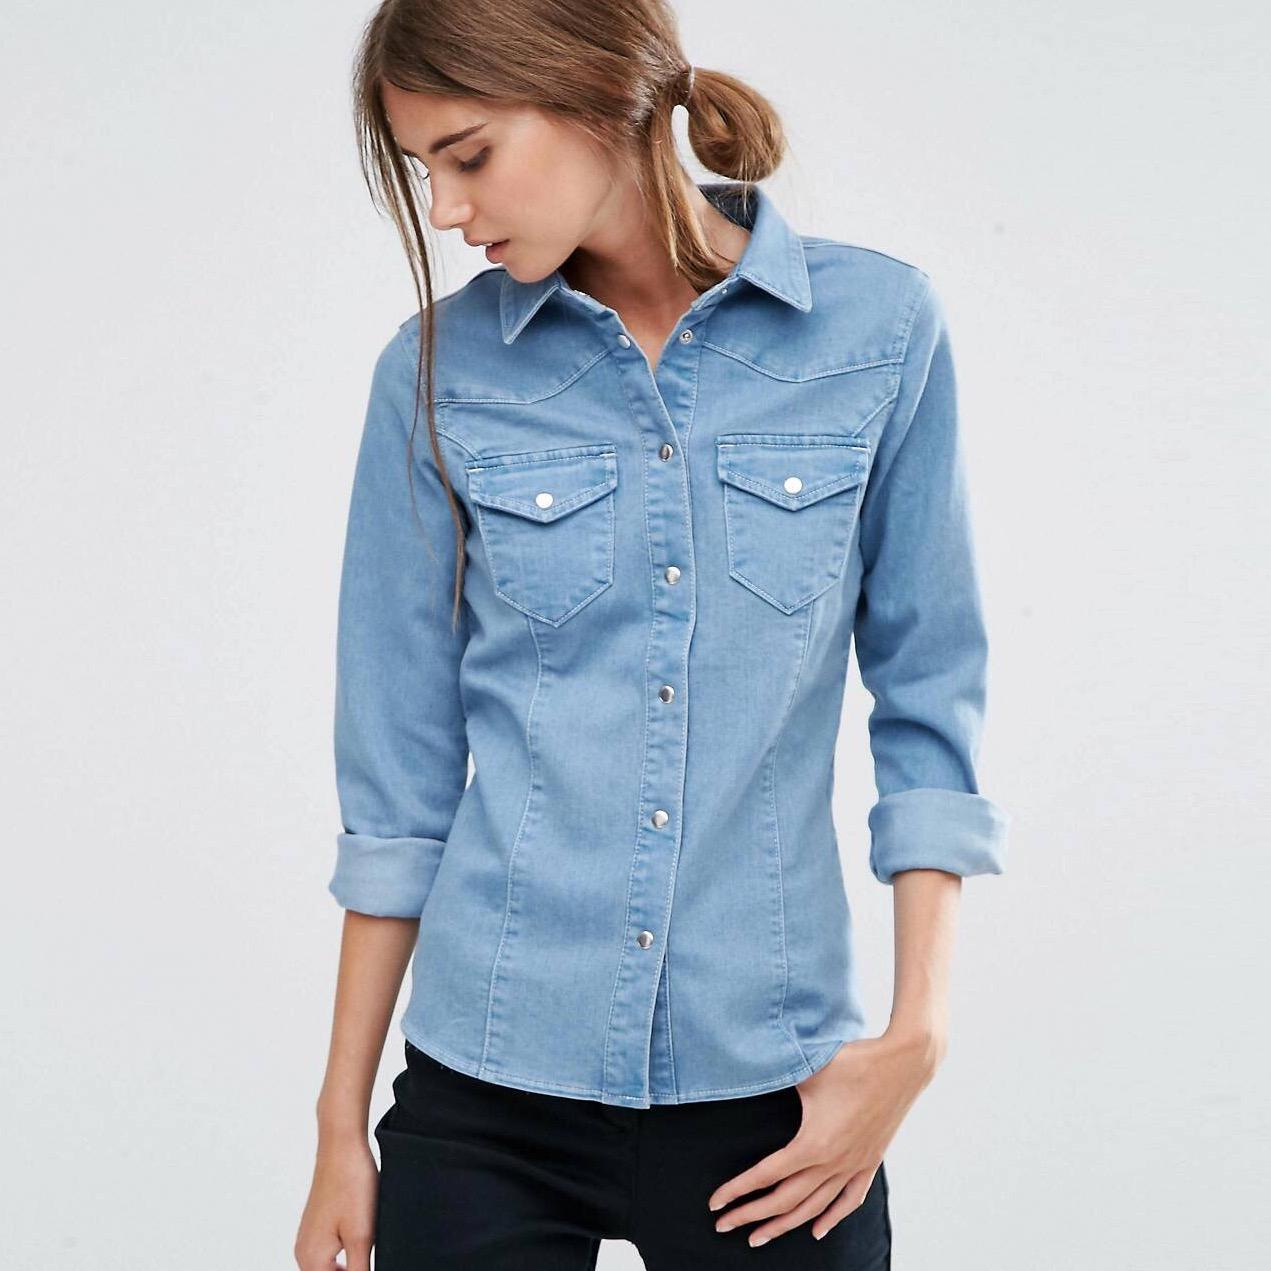 Рубашки женские джинсовые большие. Рубашка джинсовая clockhouse. Джинсовая рубашка Zara 2021. Джинсовая рубашка синяя LTB 61018. Джинсовая рубашка женская.